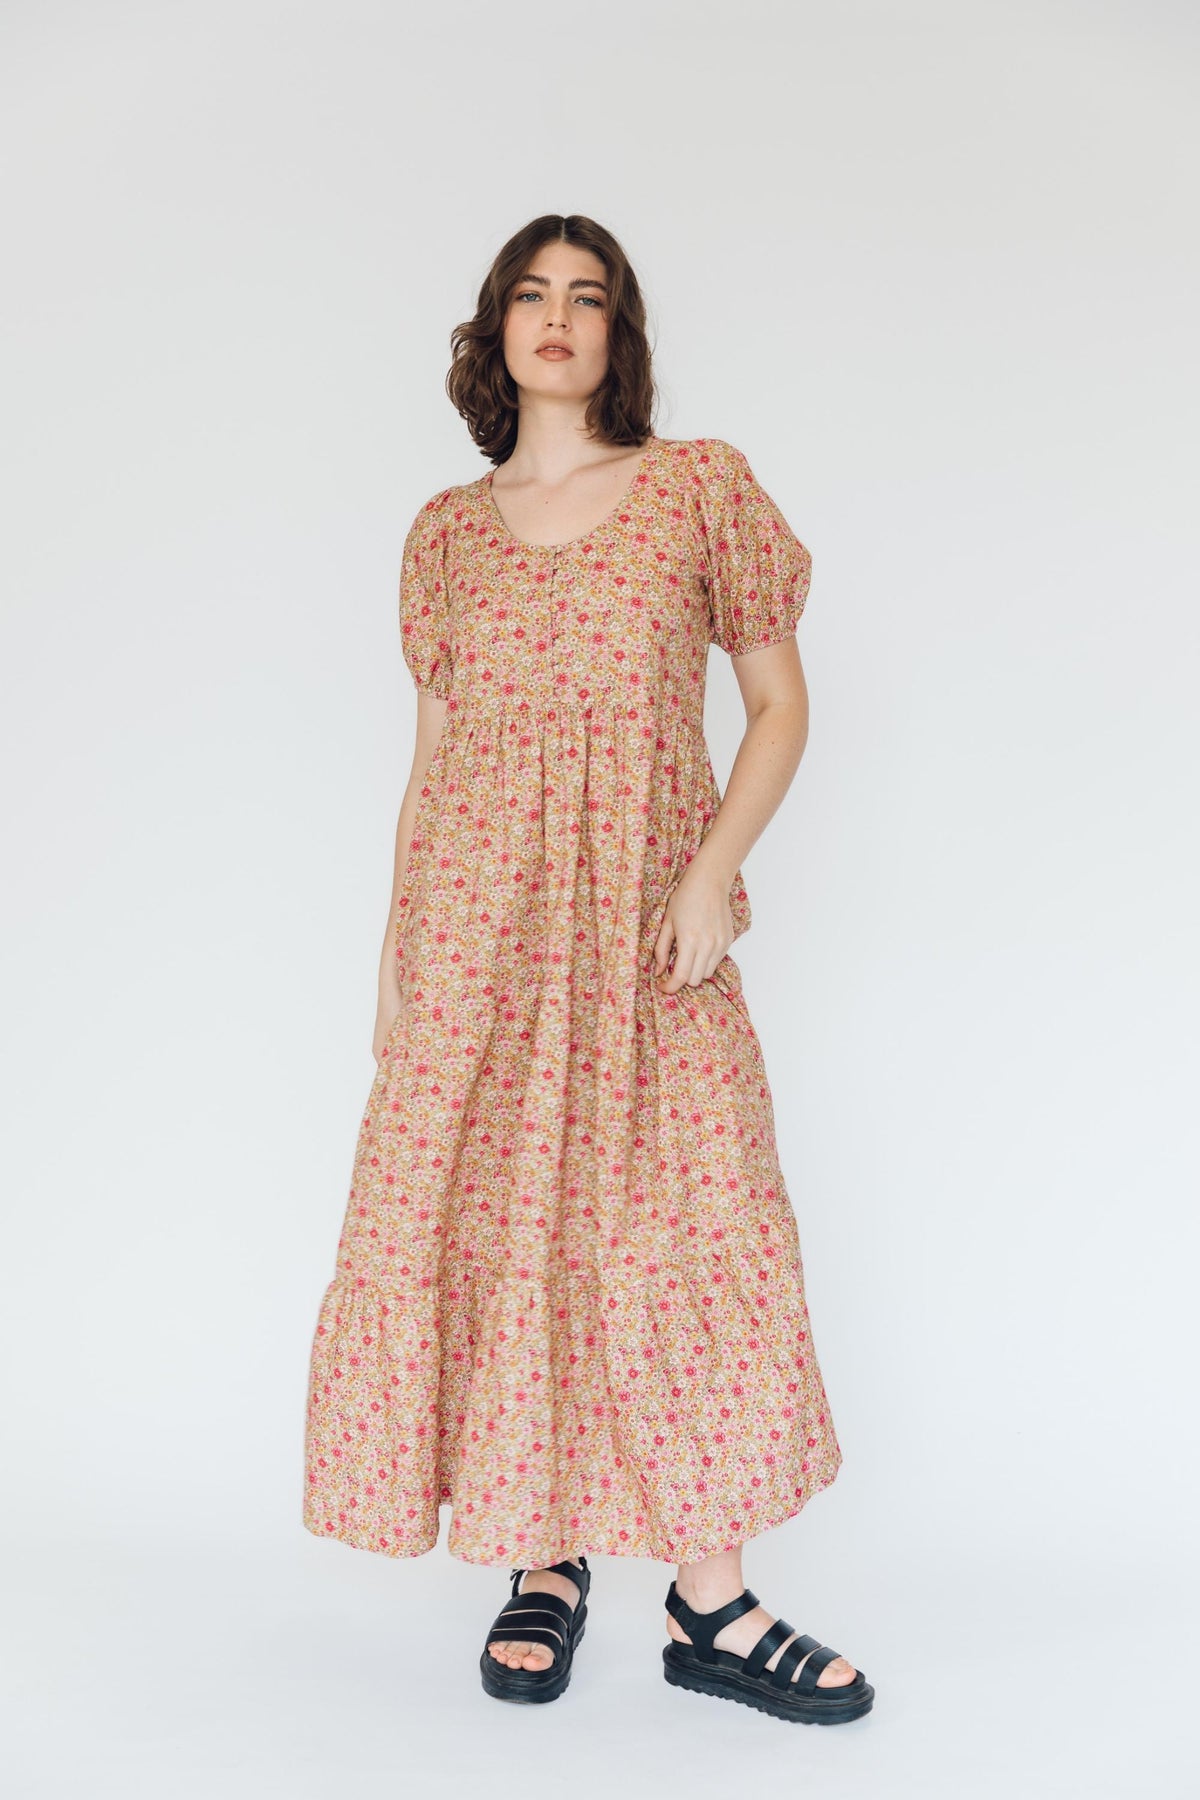 Past Style - Lottie Dress in Summer Rose